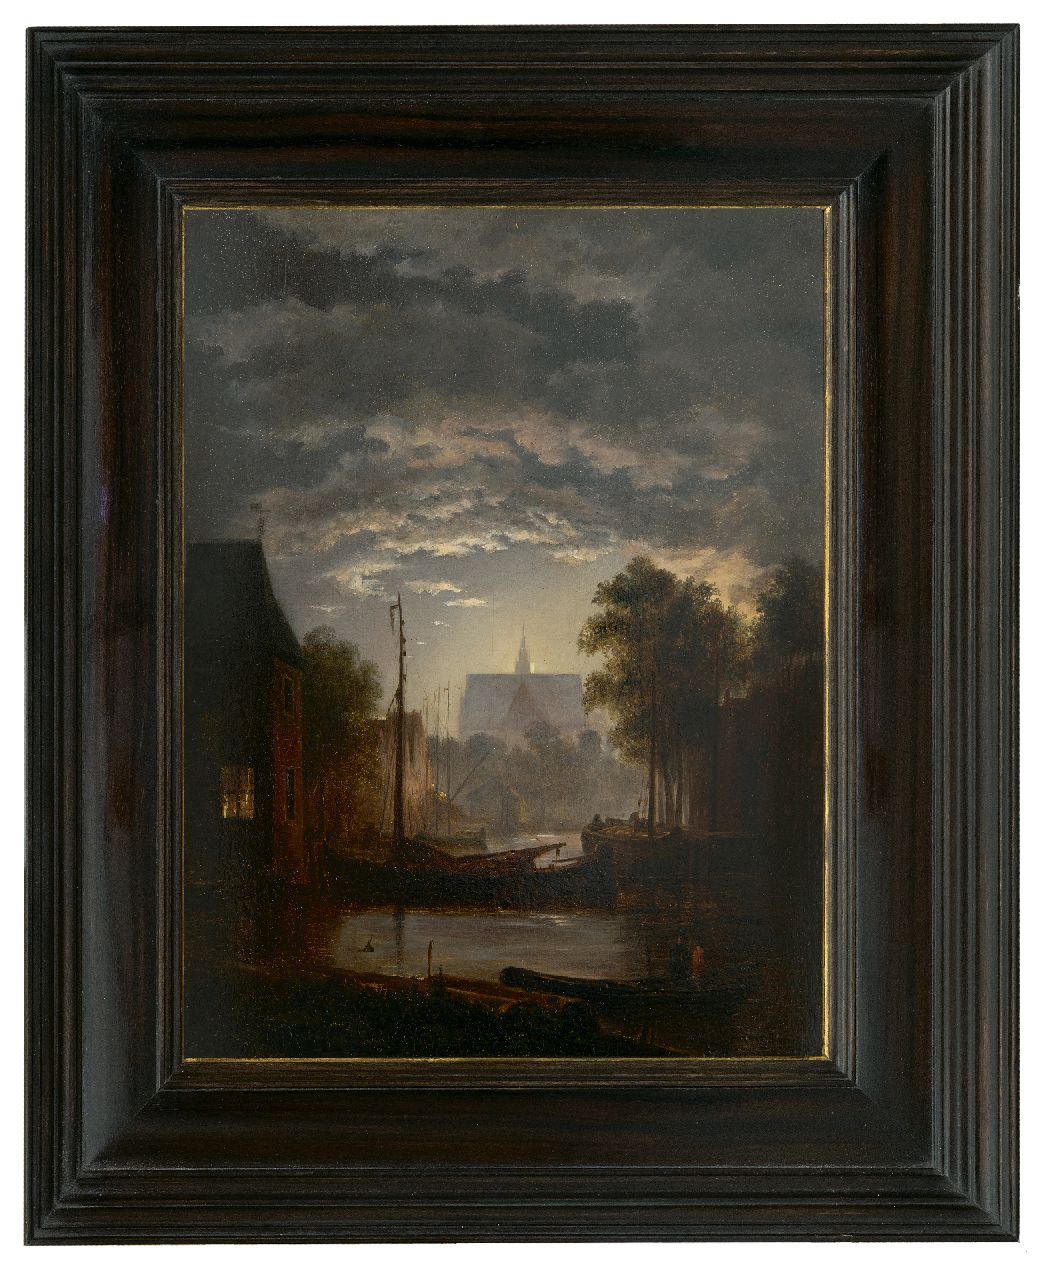 Abels J.Th.  | 'Jacobus' Theodorus Abels | Gemälde zum Verkauf angeboten | Kleiner Stadthafen im Mondlicht, Öl auf Holz 29,7 x 23,6 cm